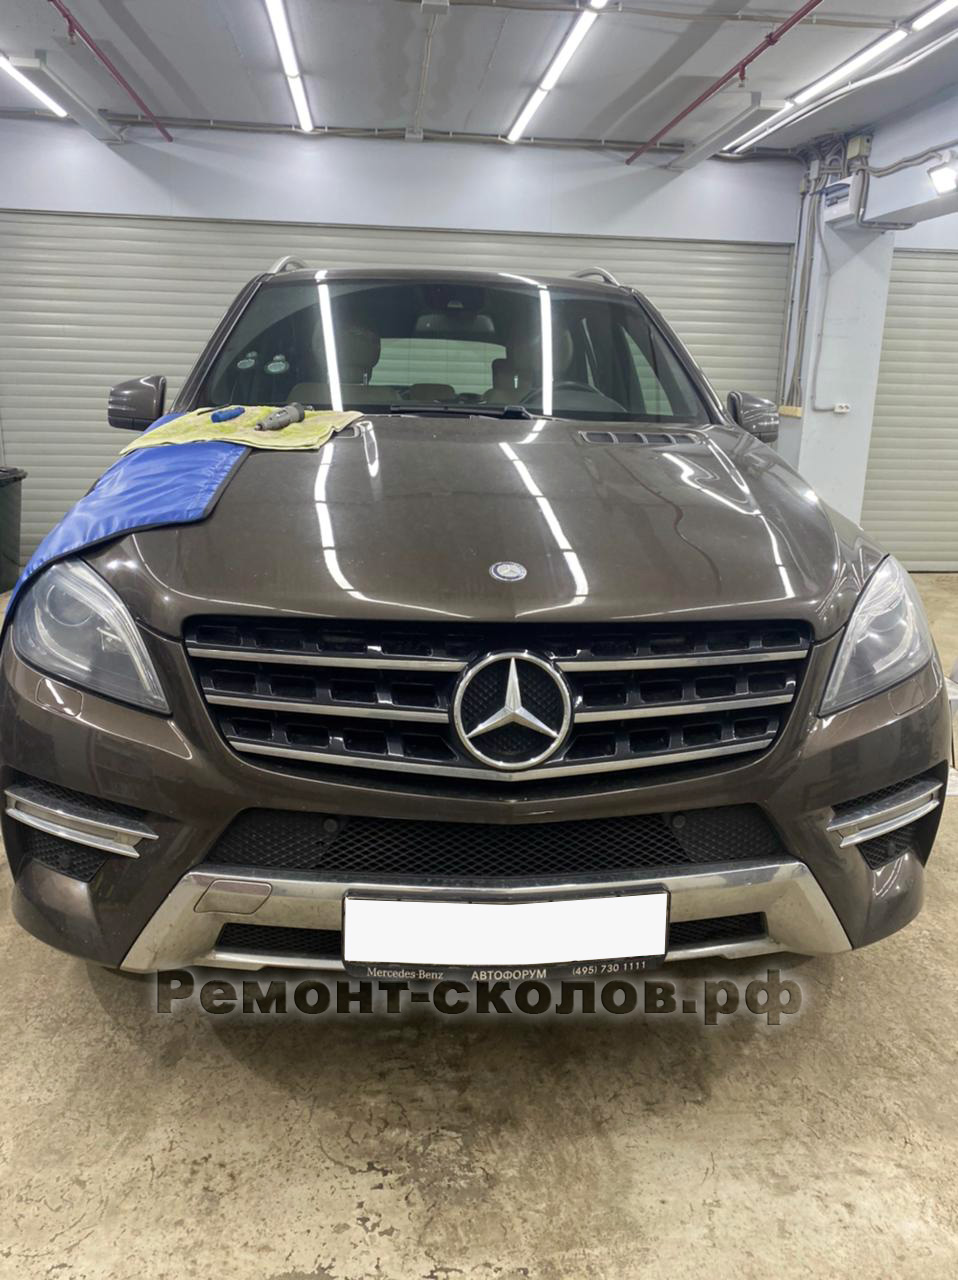 Mercedes - ремонт сколов лобового стекла в ЮЗАО